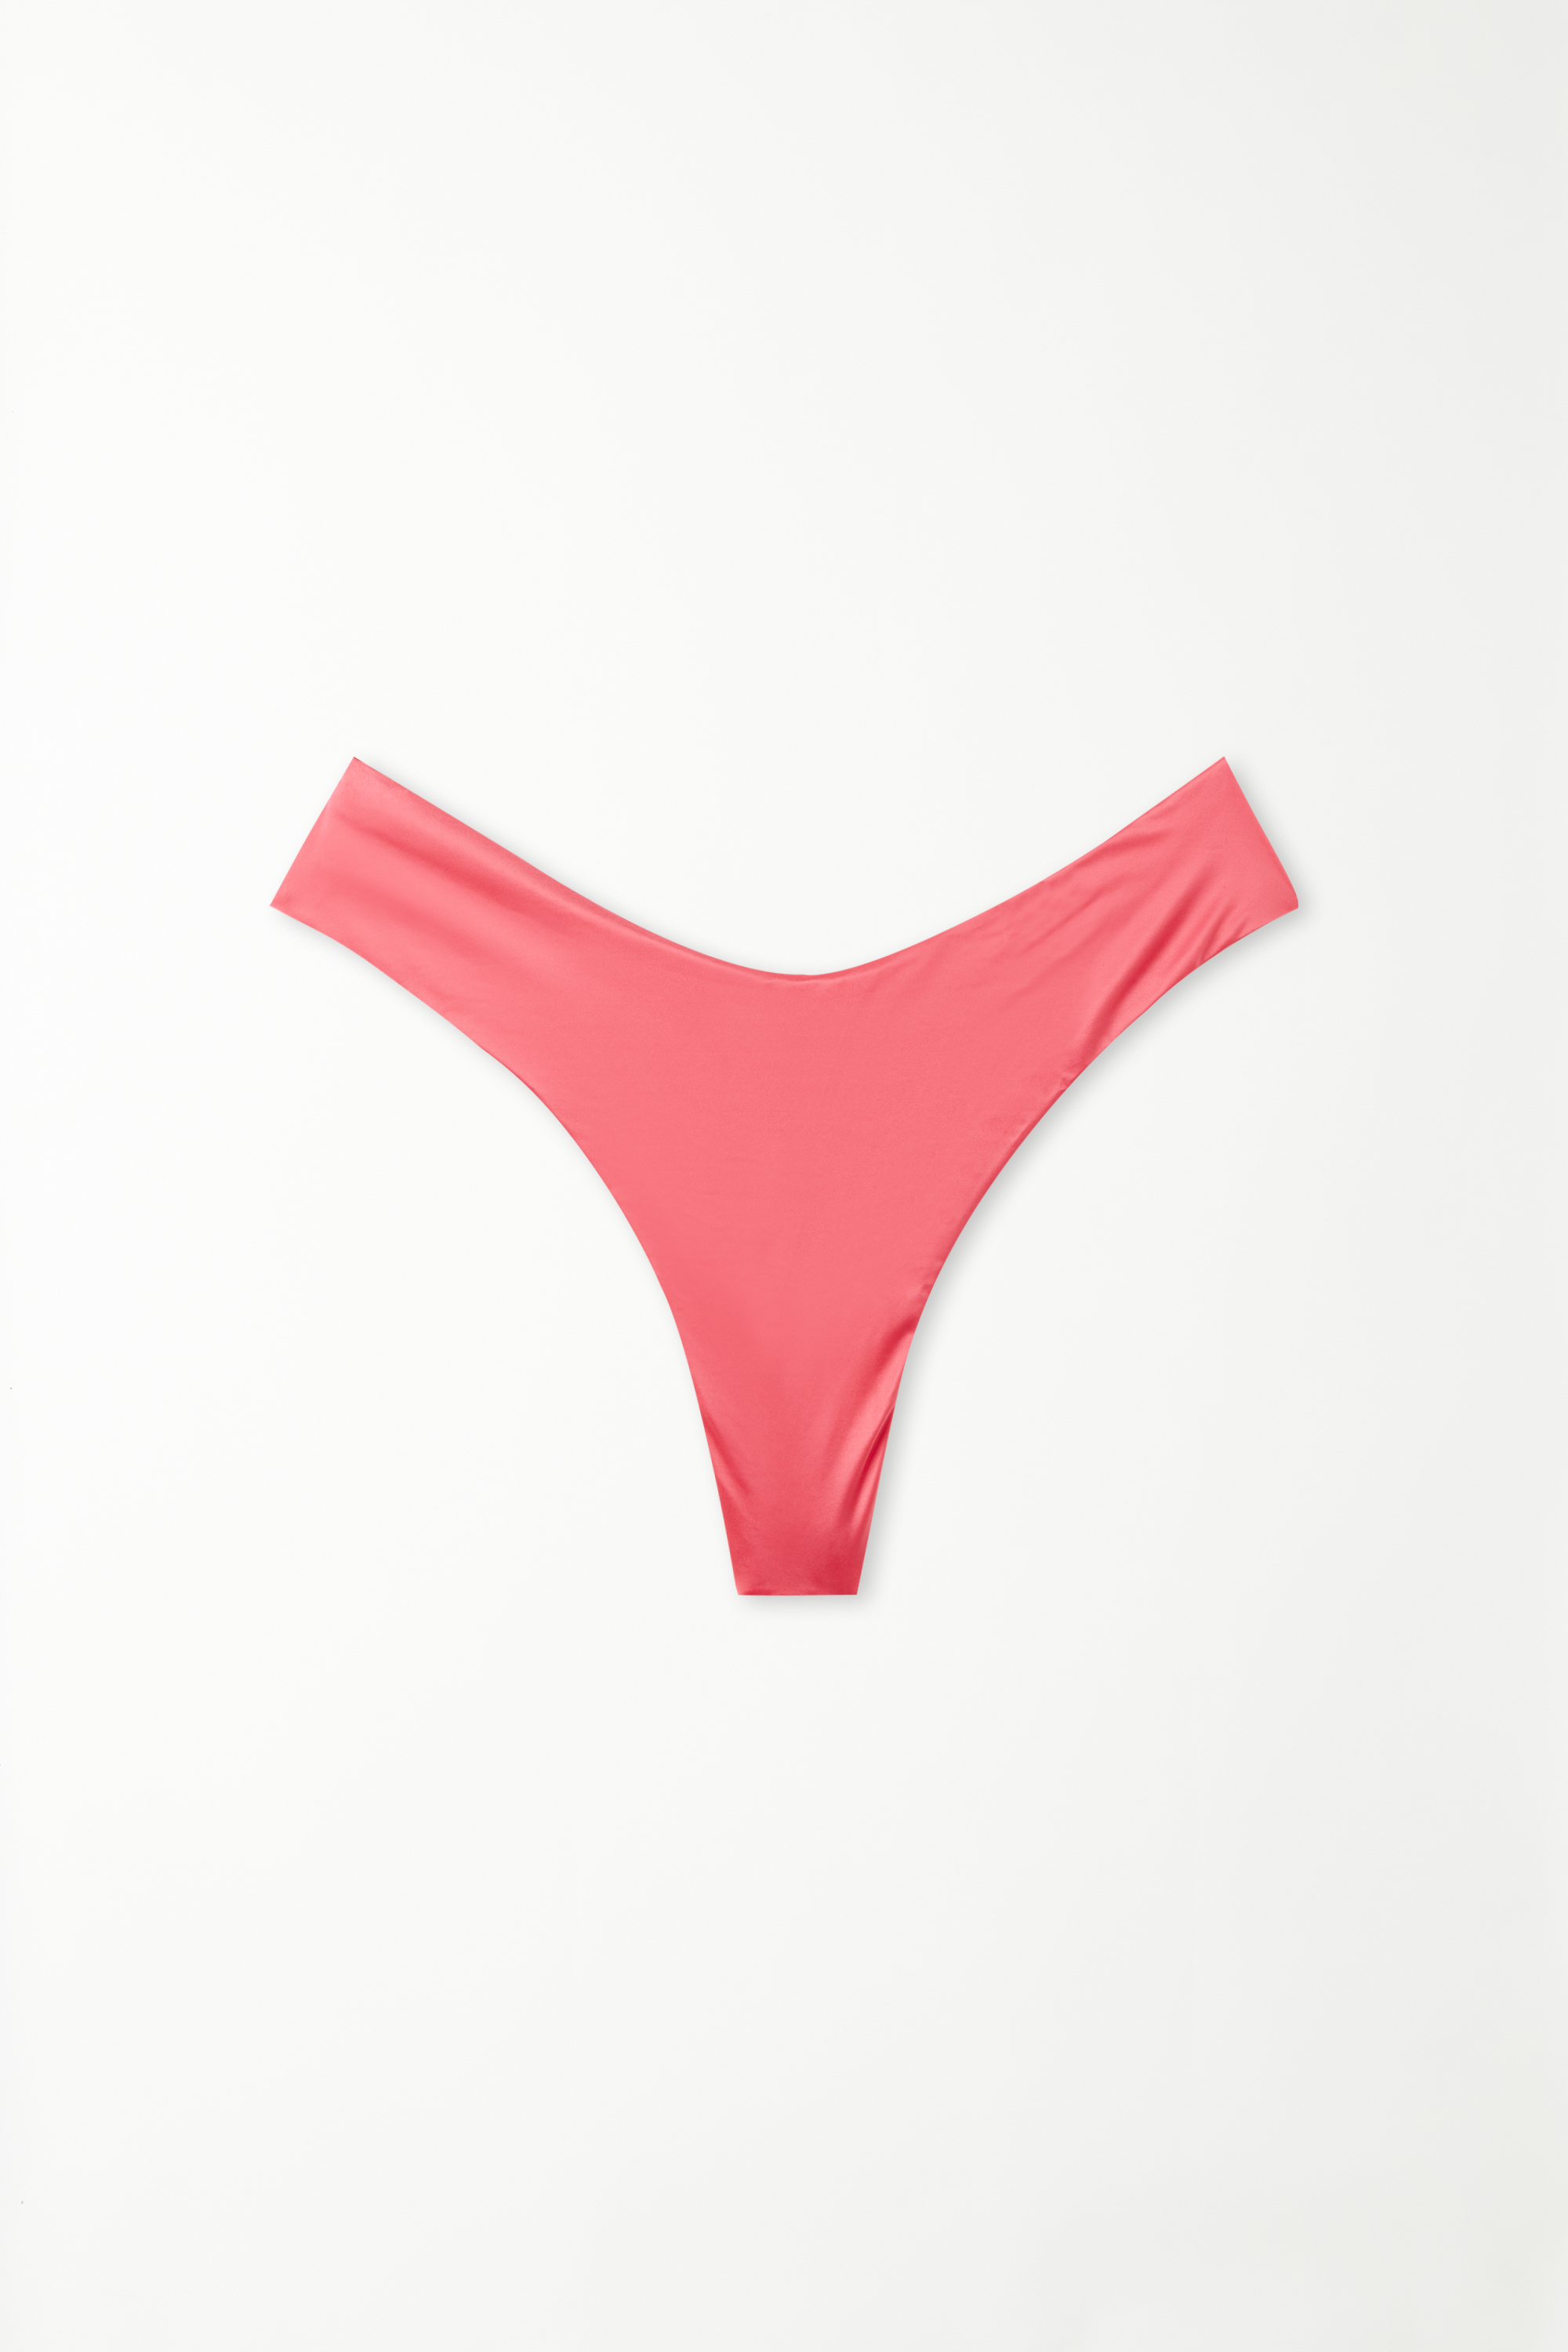 Sommerlich rosafarbener Brazilian-Bikinislip mit hohem, abgerundetem Beinausschnitt Shiny